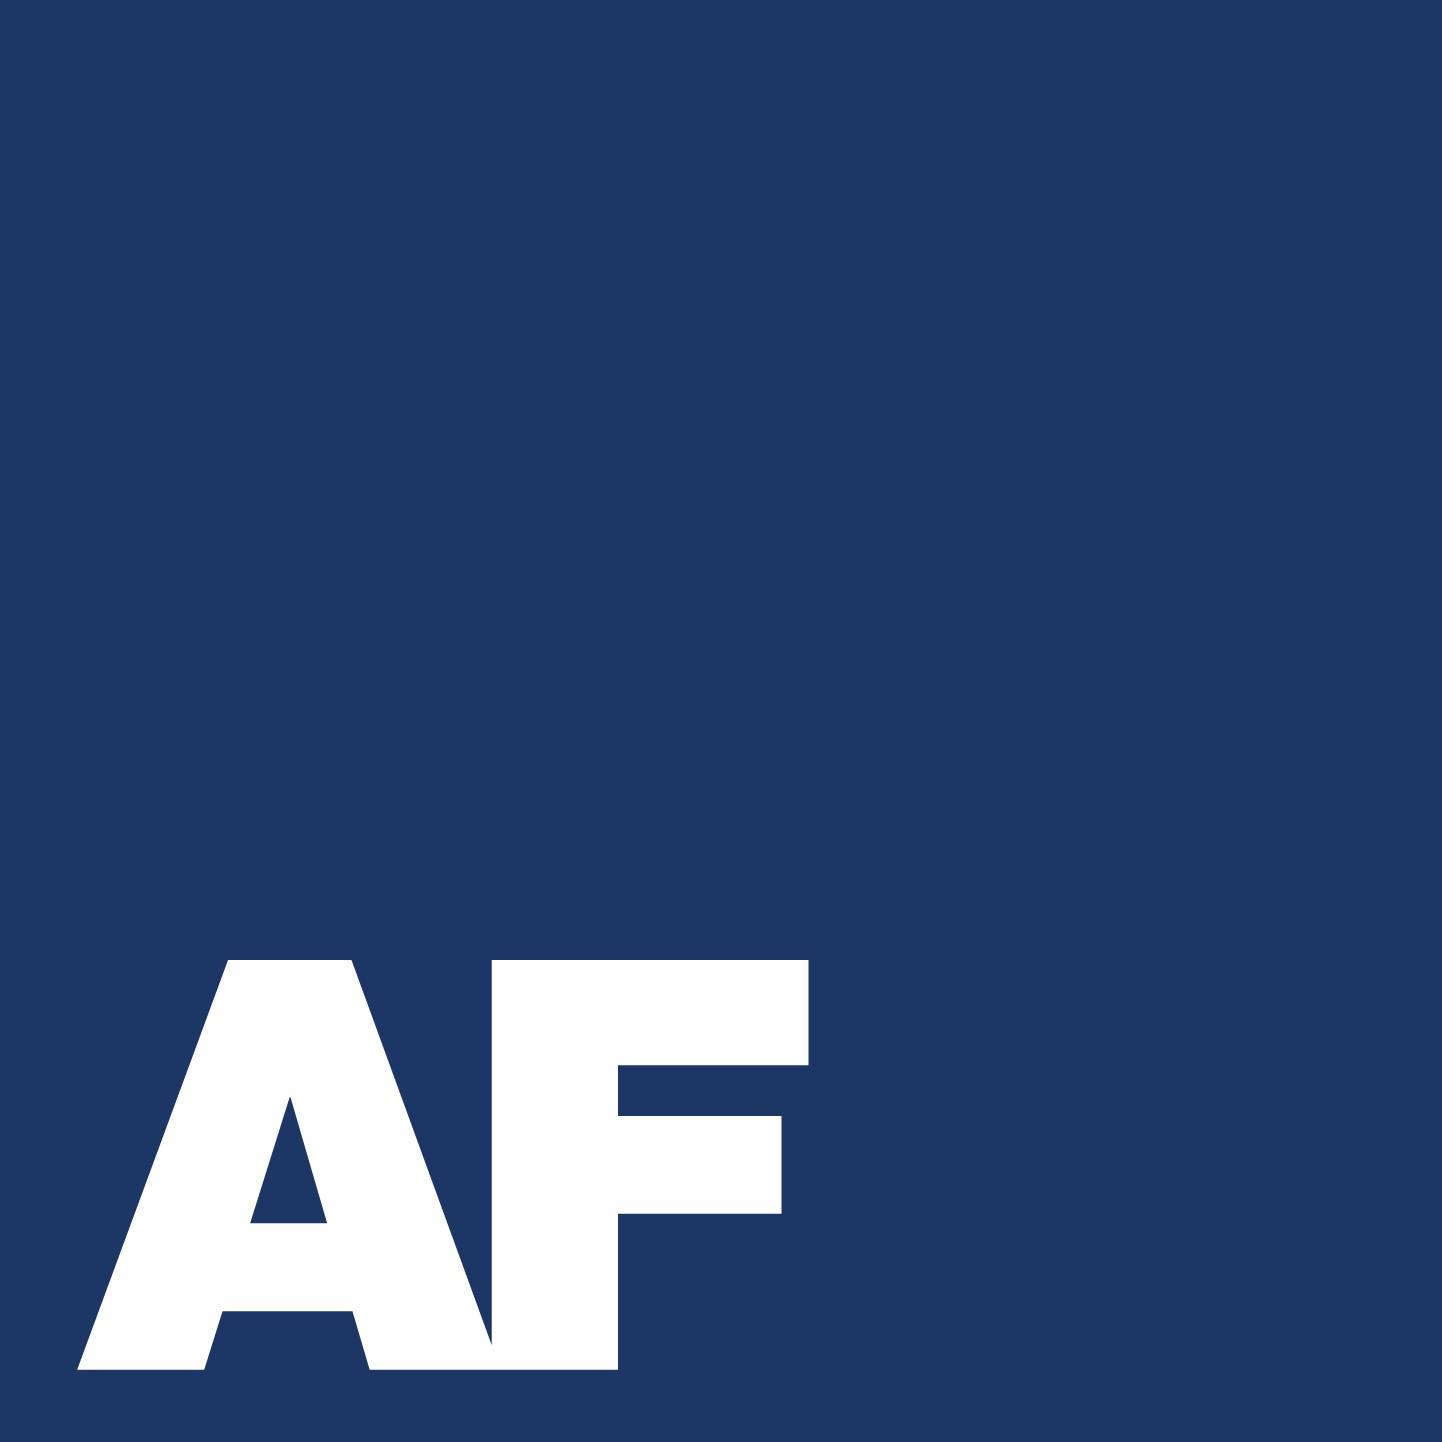 The AF Group